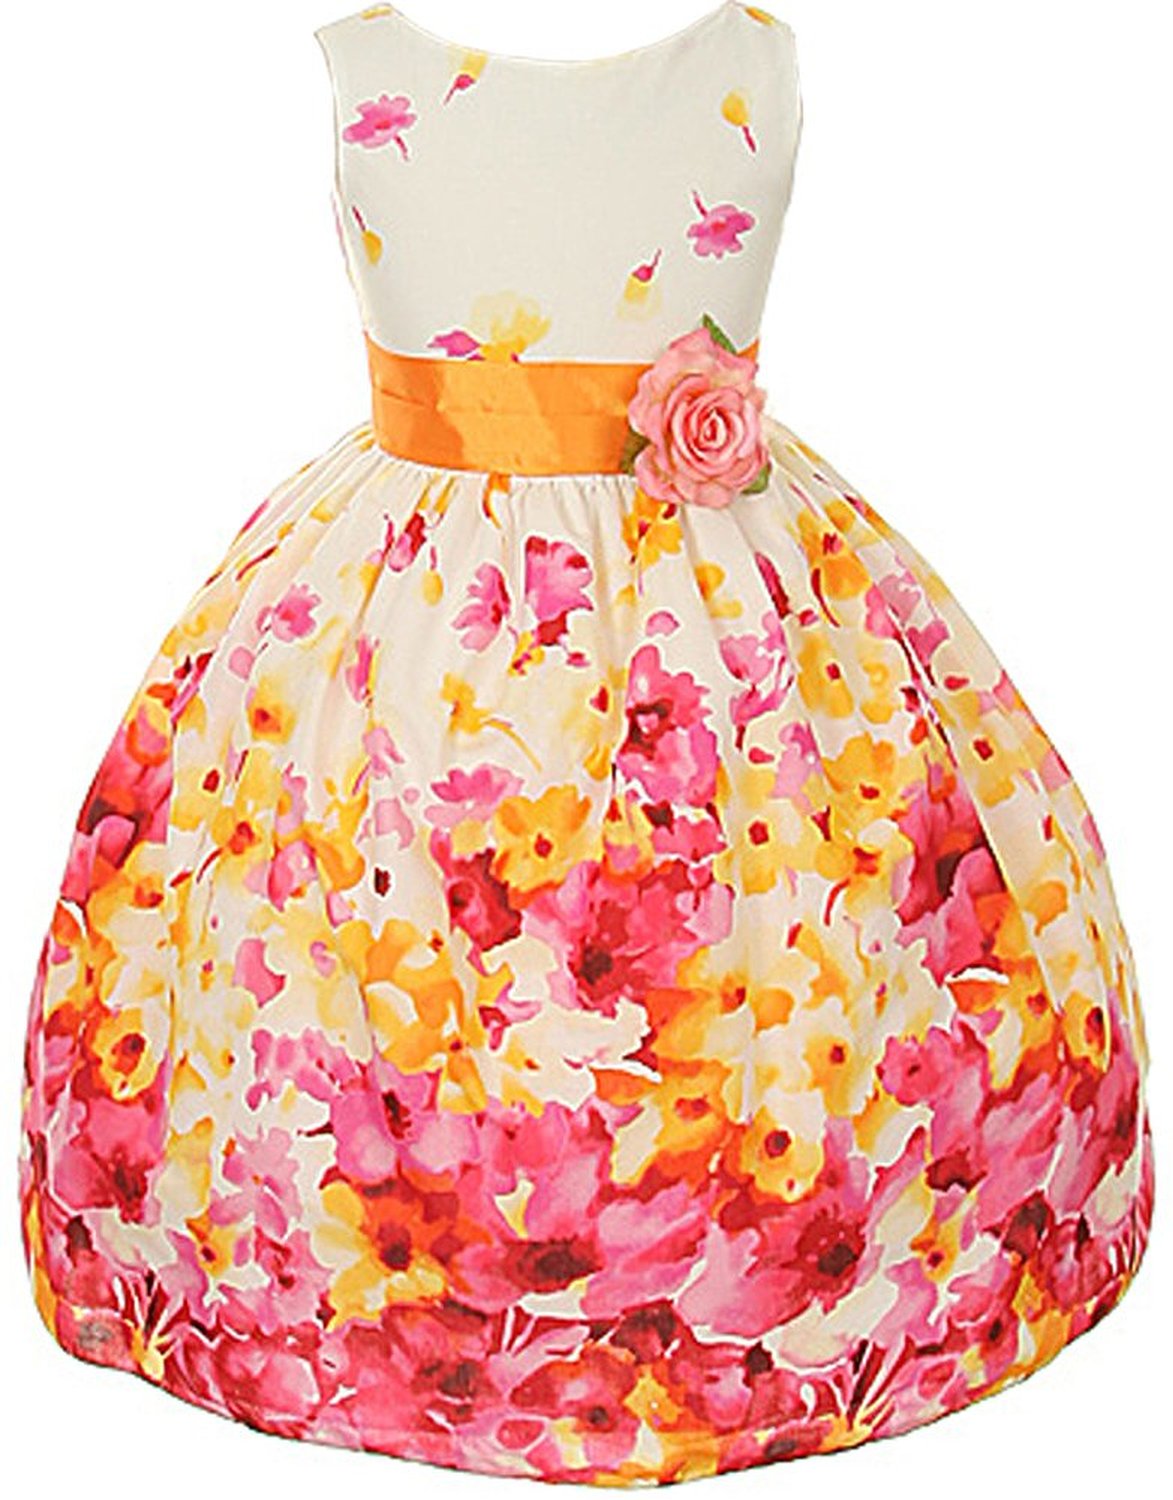 cute easter dresses for girls